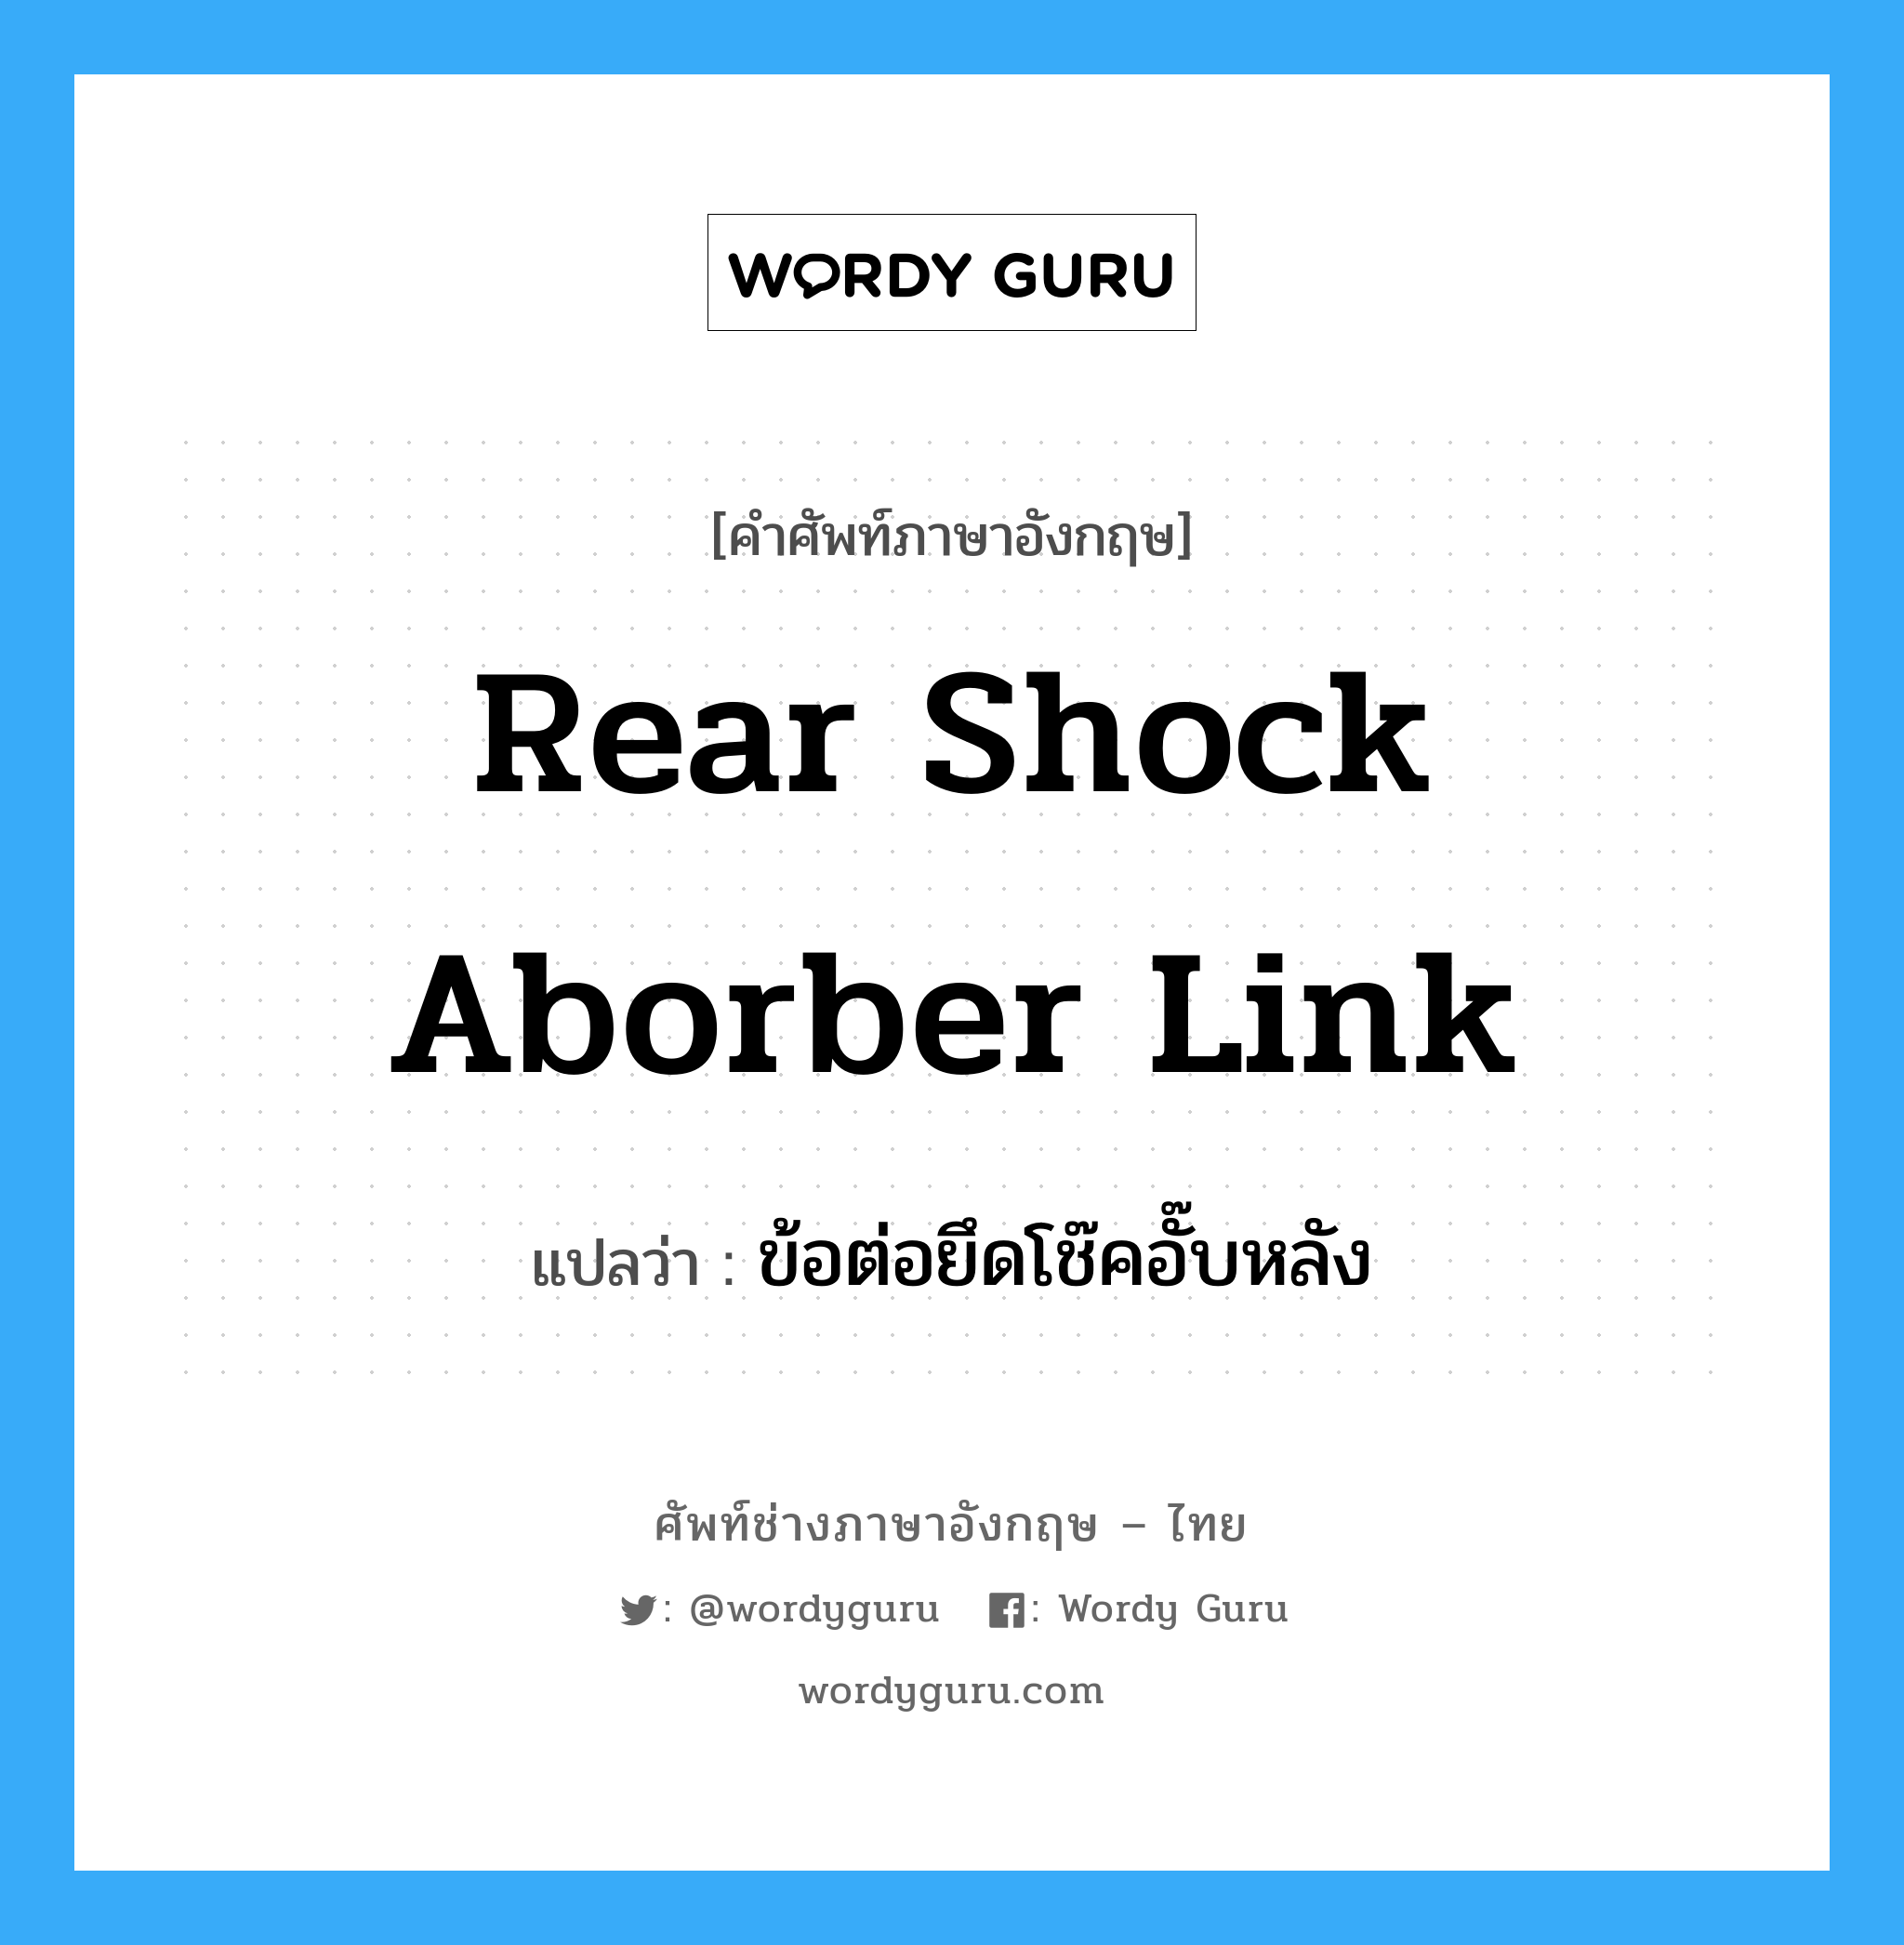 rear shock aborber link แปลว่า?, คำศัพท์ช่างภาษาอังกฤษ - ไทย rear shock aborber link คำศัพท์ภาษาอังกฤษ rear shock aborber link แปลว่า ข้อต่อยึดโช๊คอั๊บหลัง